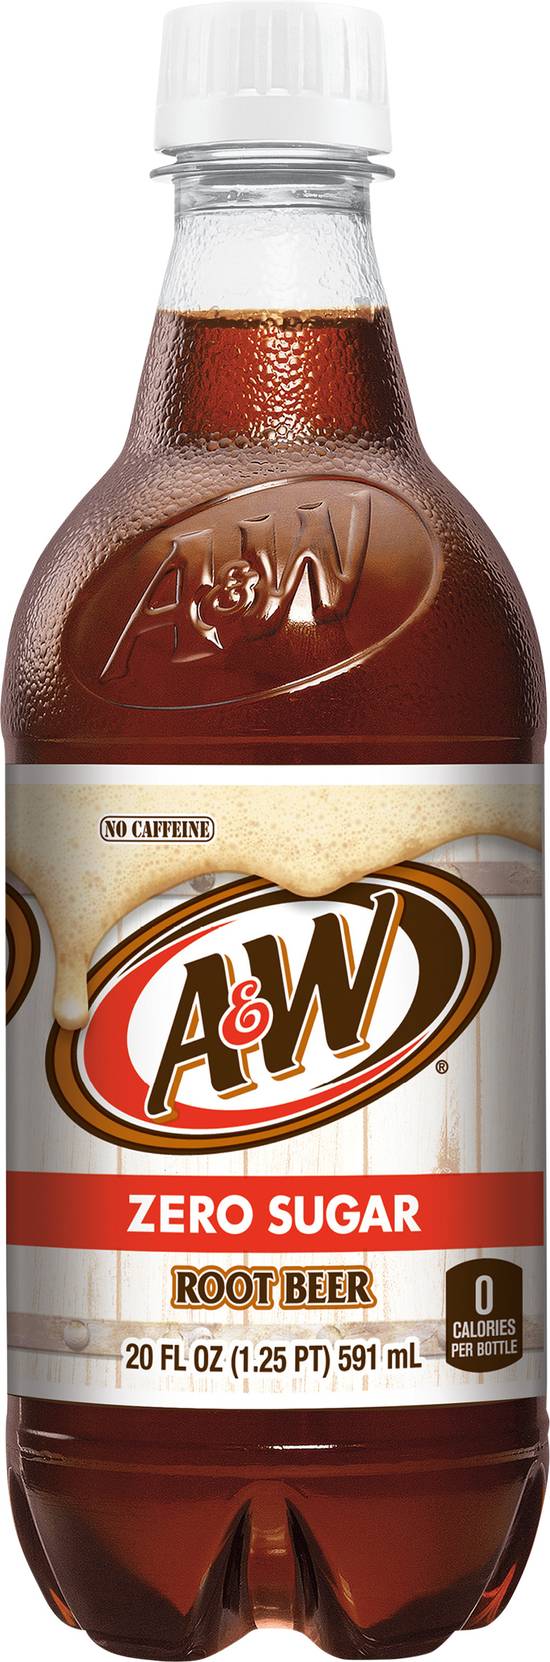 A&W Zero Sugar Root Beer (20 fl oz)